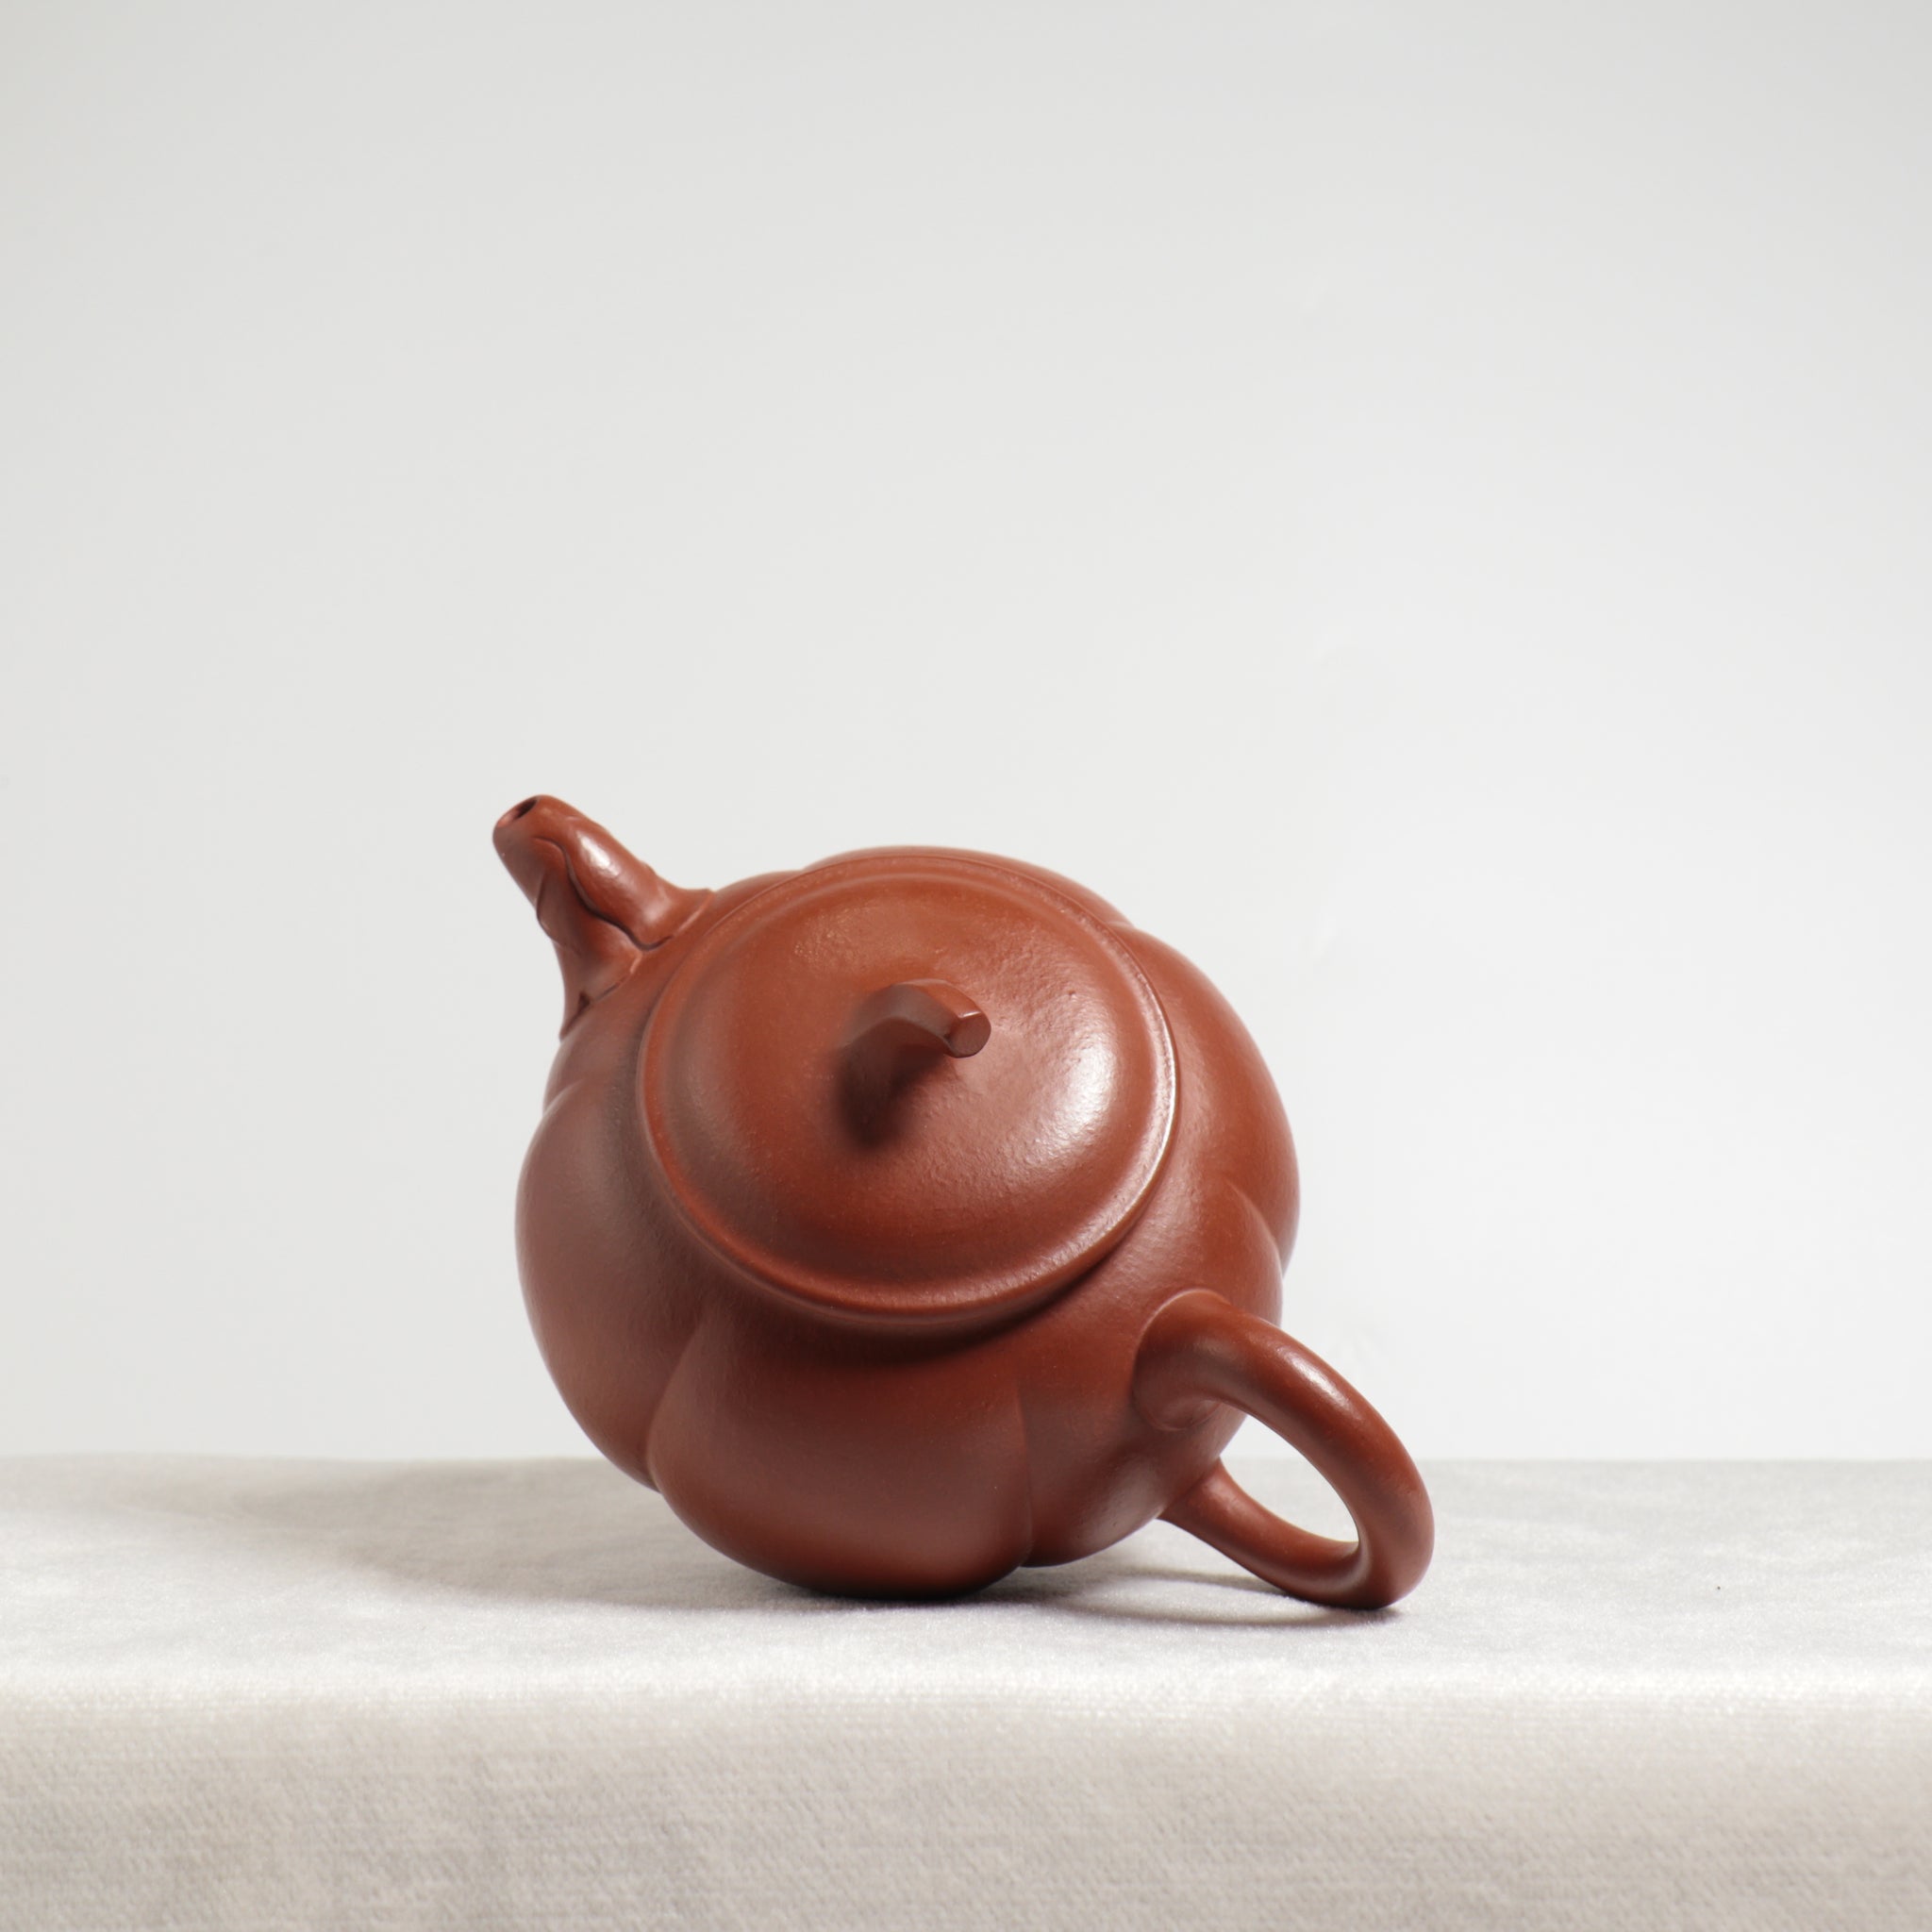 【金瓜】特級大紅袍瓜意紫砂茶壺